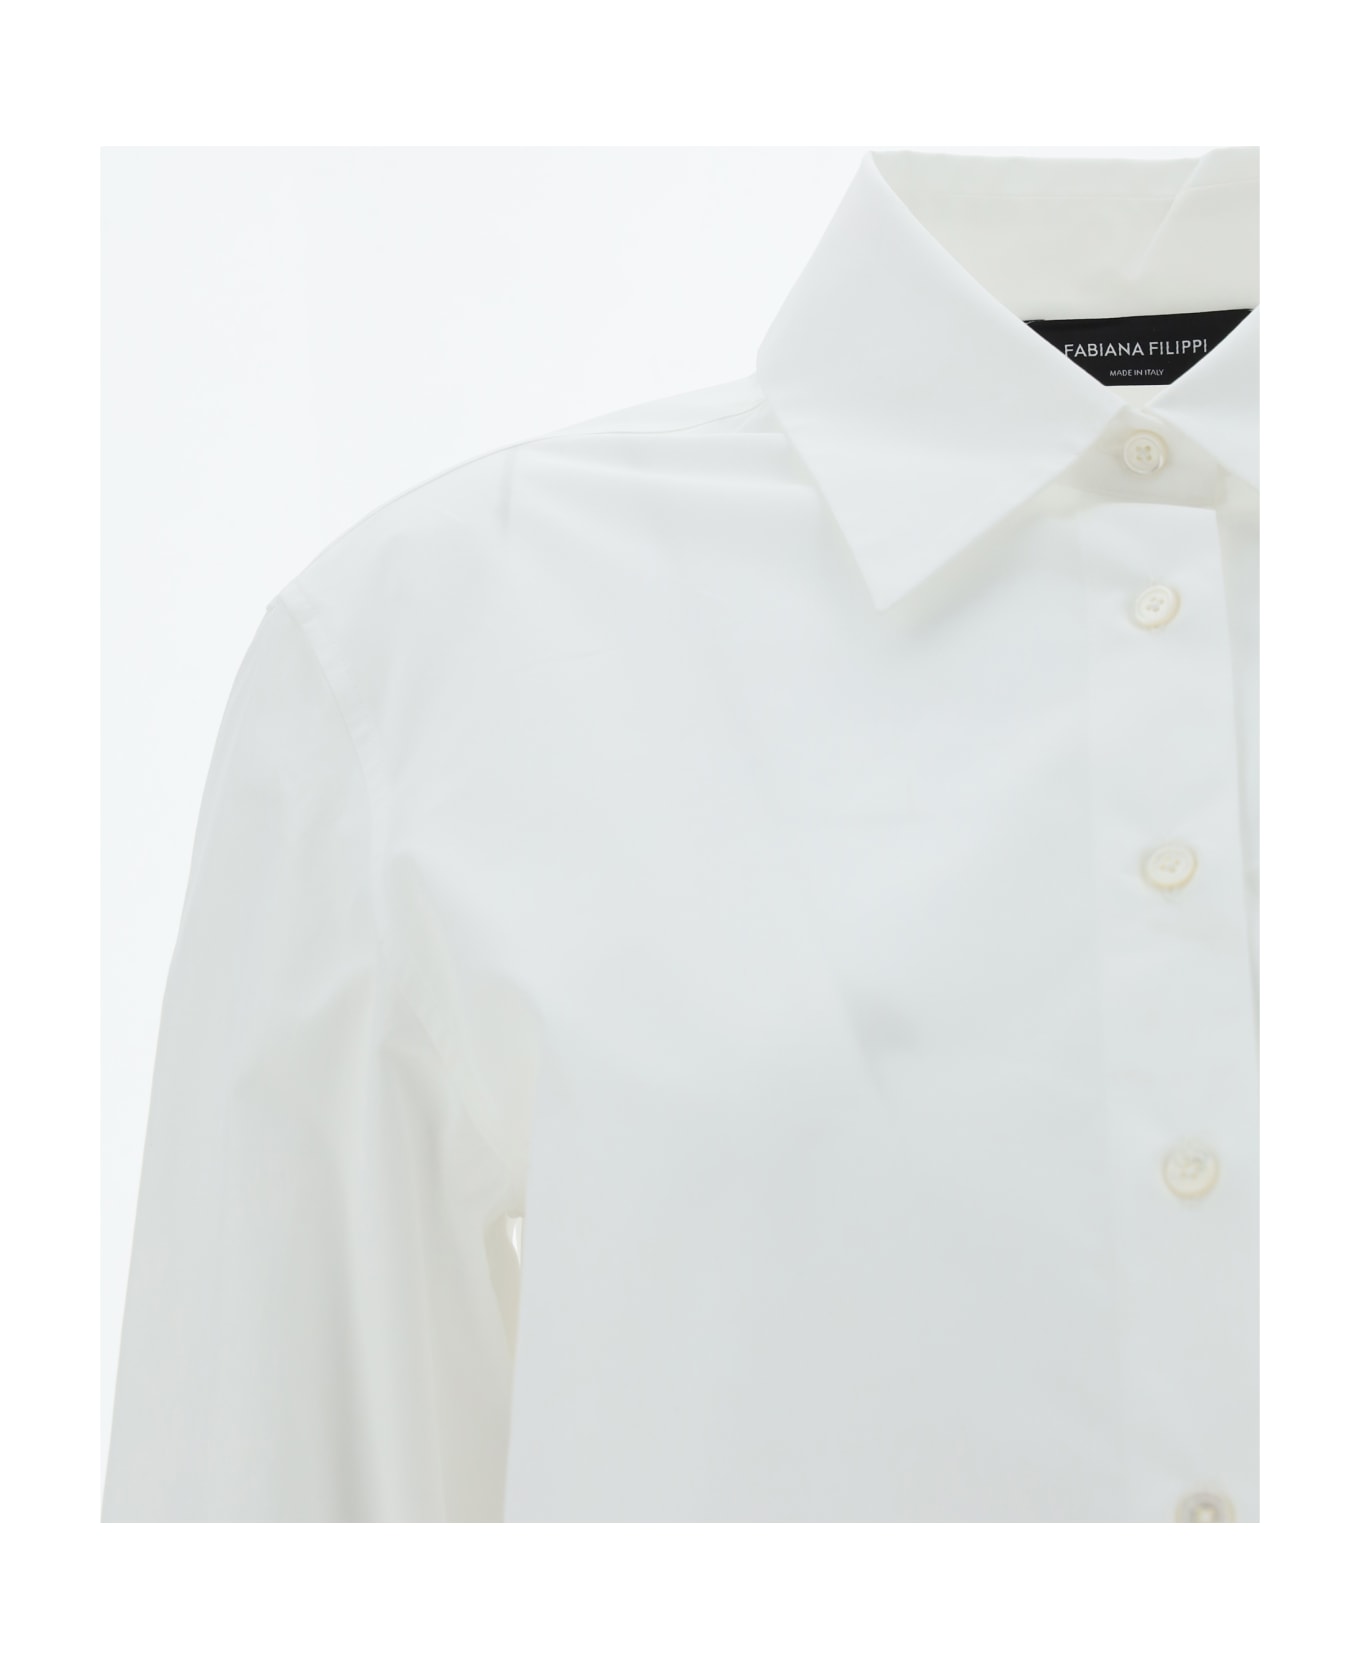 Fabiana Filippi Poplin Shirt - Bianco Ottico